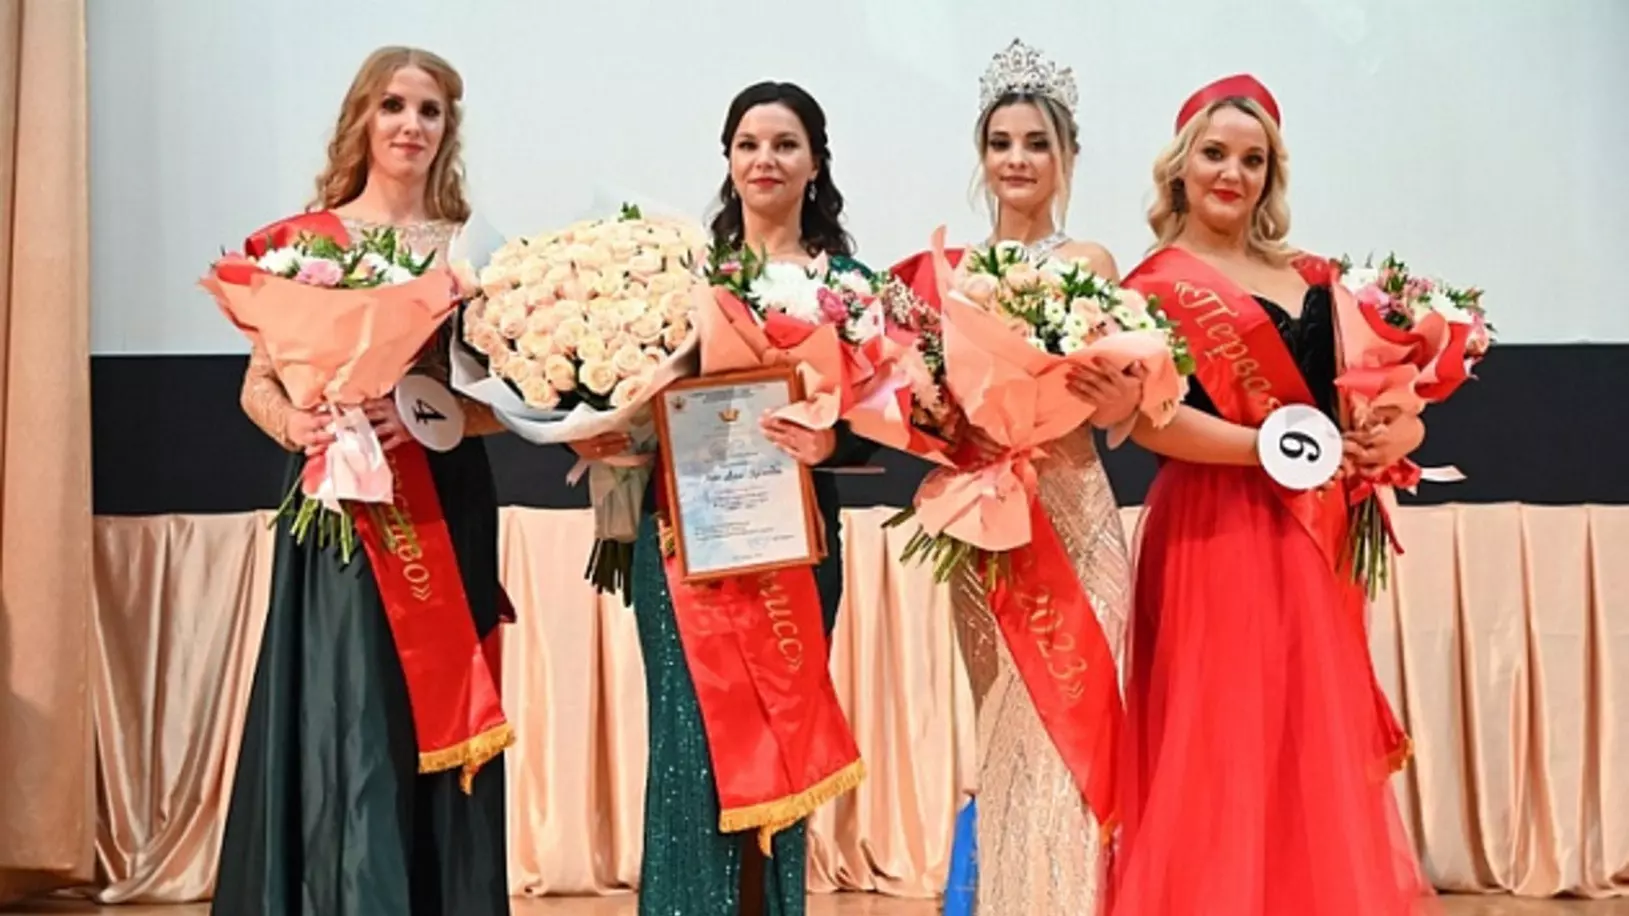 Конкурс красоты и творчества "Мисс УИС" прошел в администрации Дзержинского района.